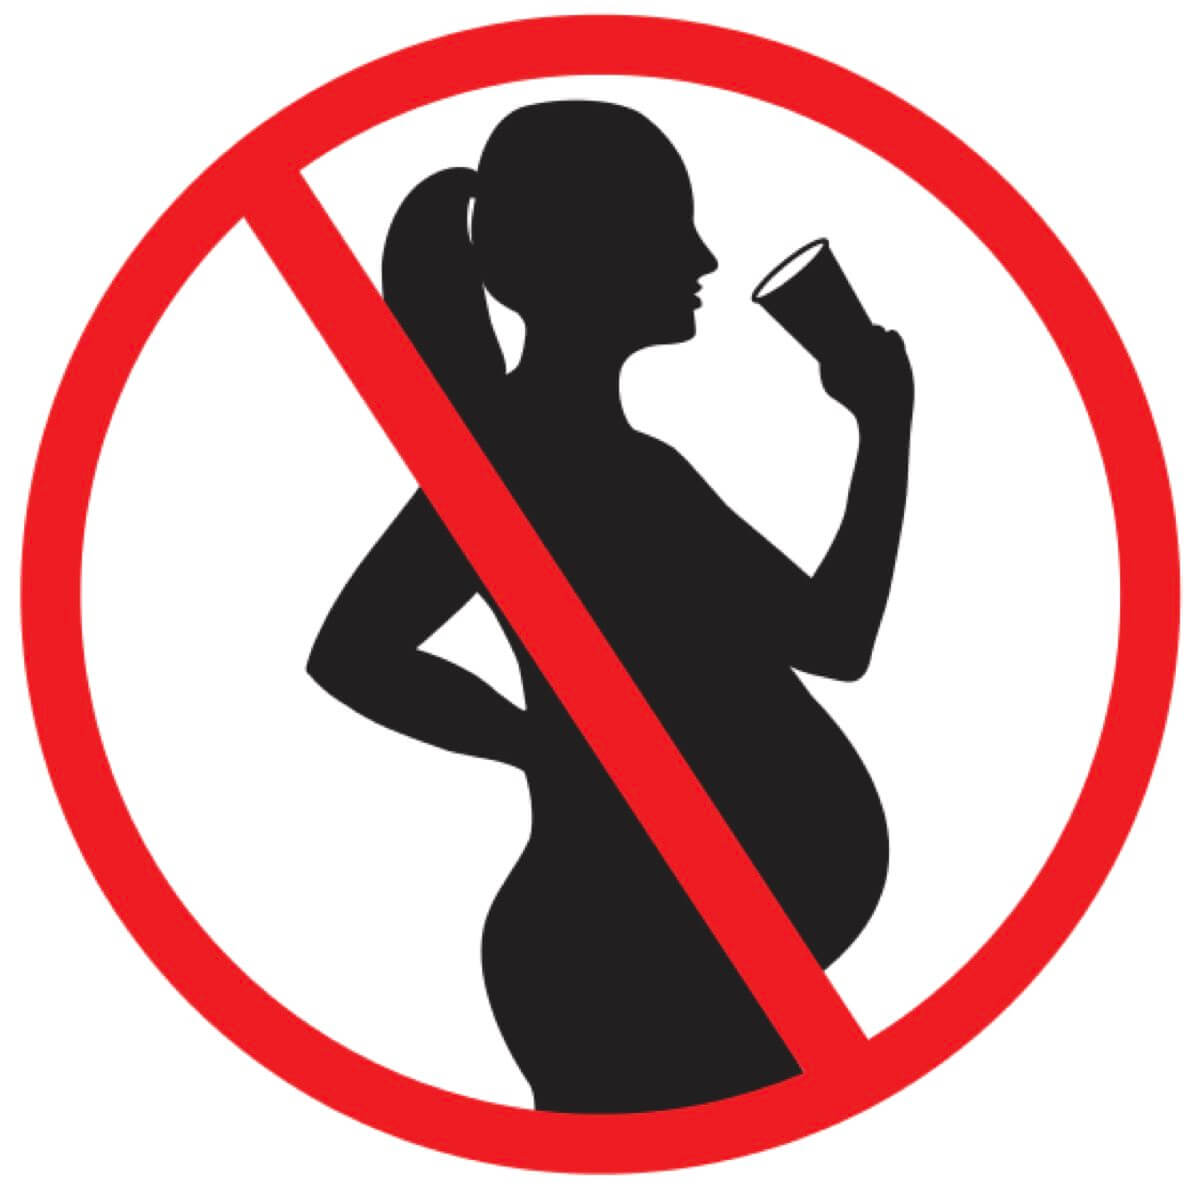 La Chartreuse Jaune est déconseillé aux femmes enceintes © communication-agroalimentaire.com